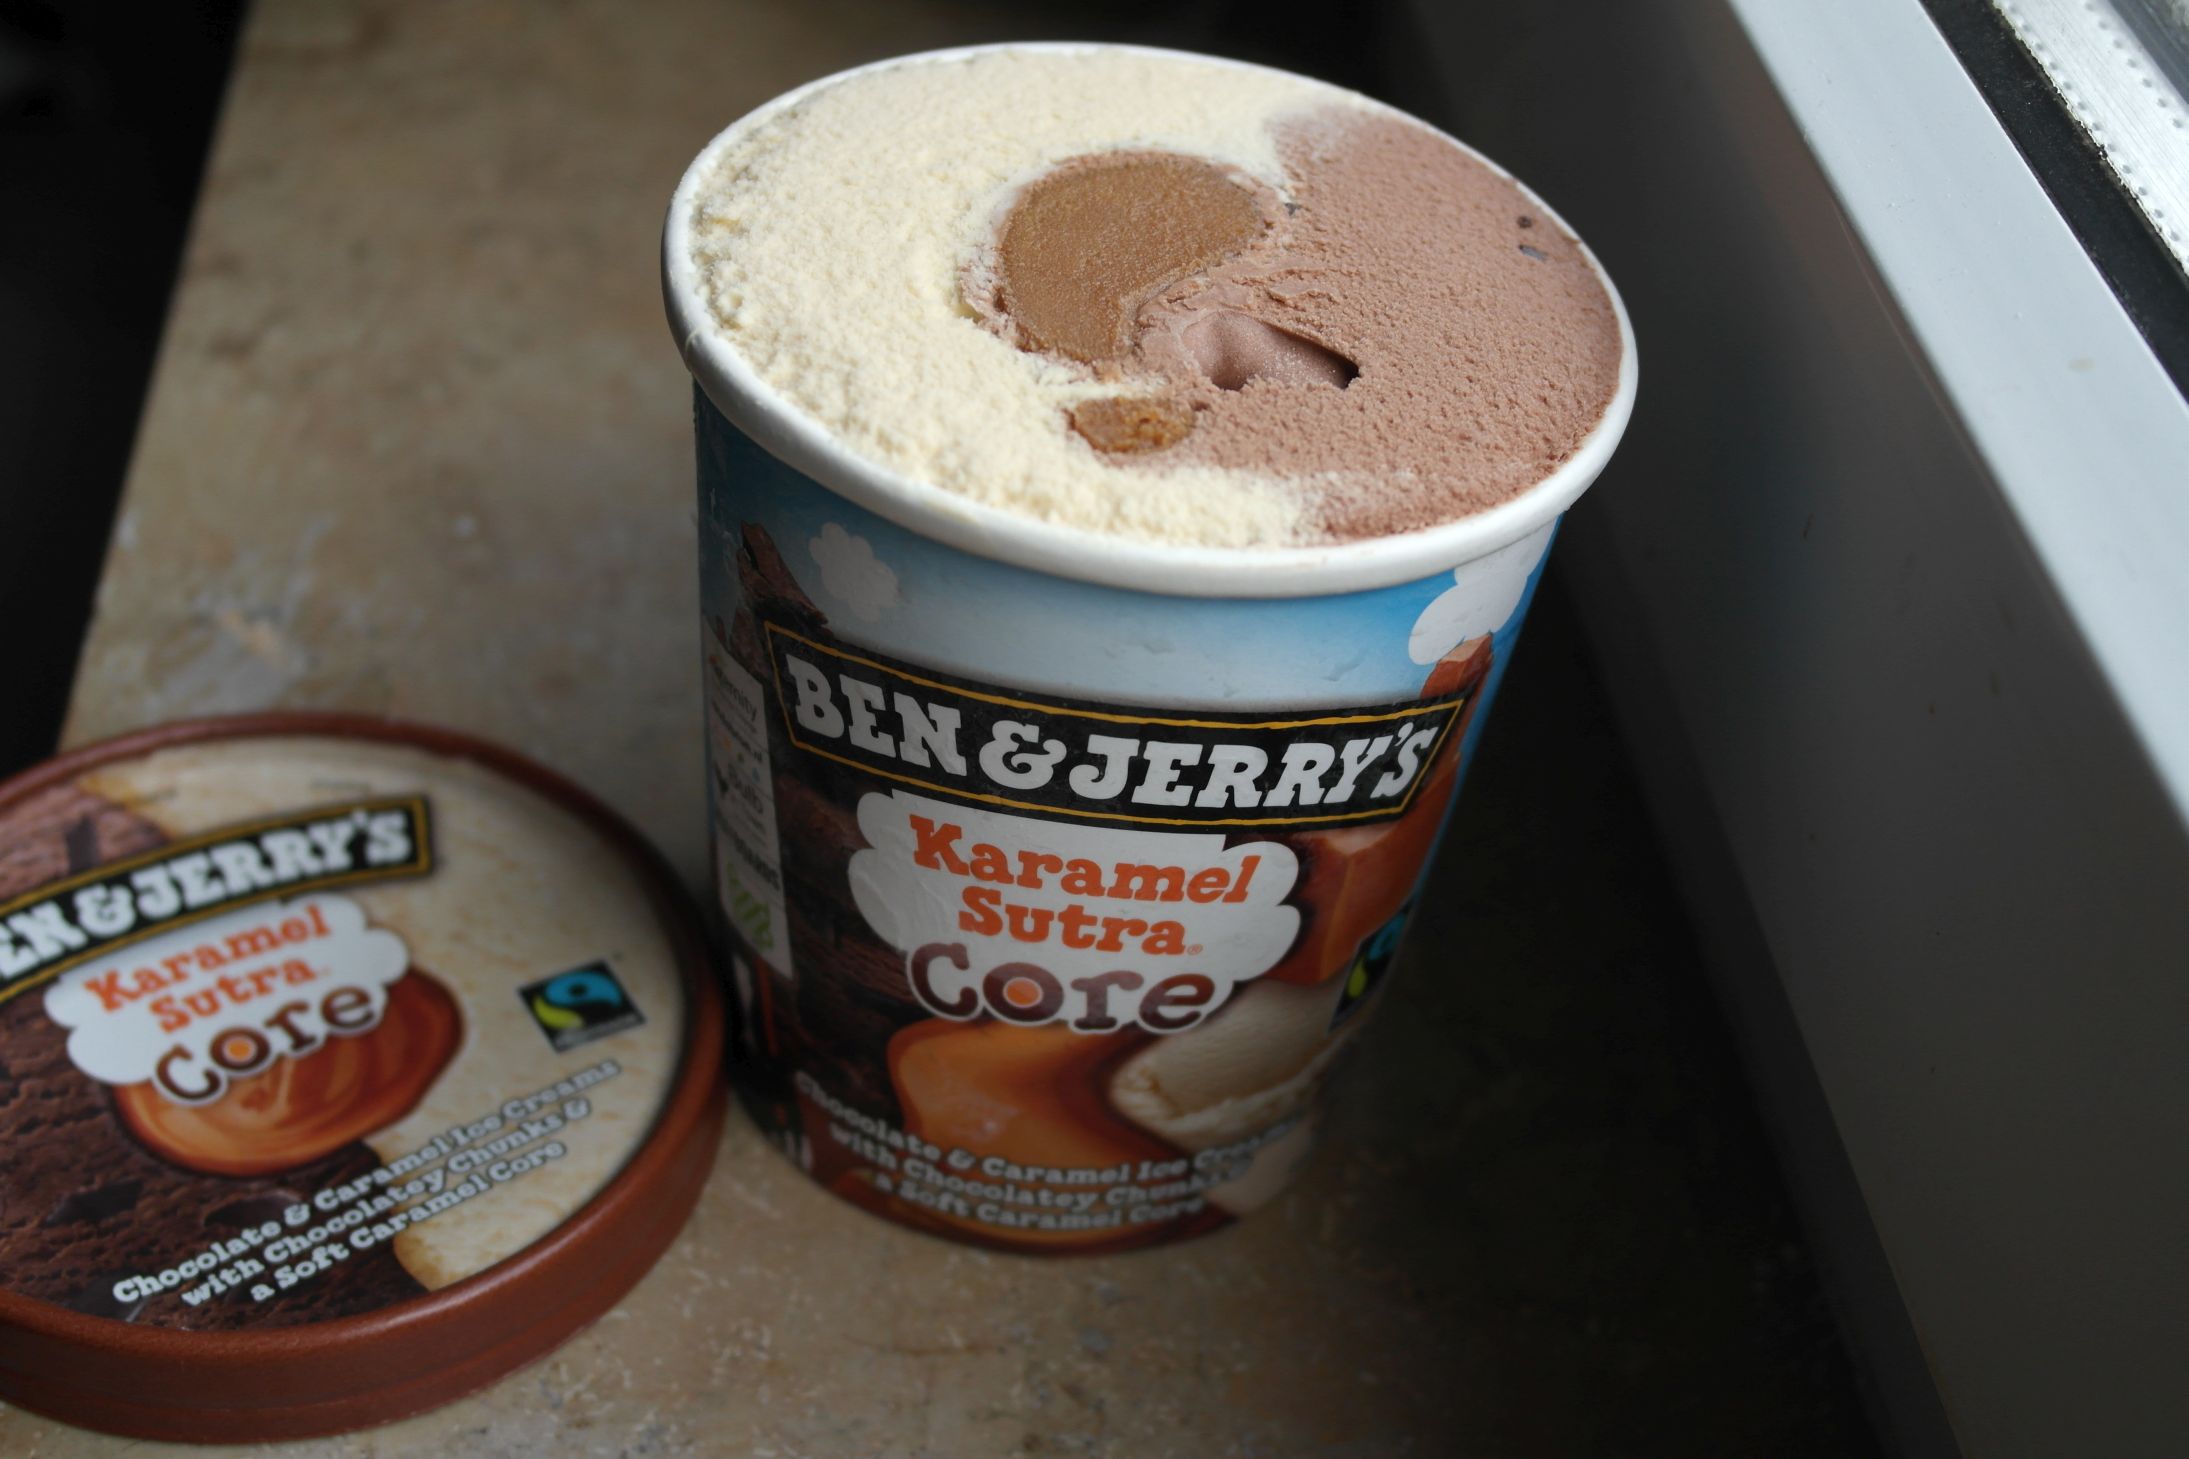 Unboxing "Ben & Jerry's Karamel Sutra" Eistest by FoodLoaf